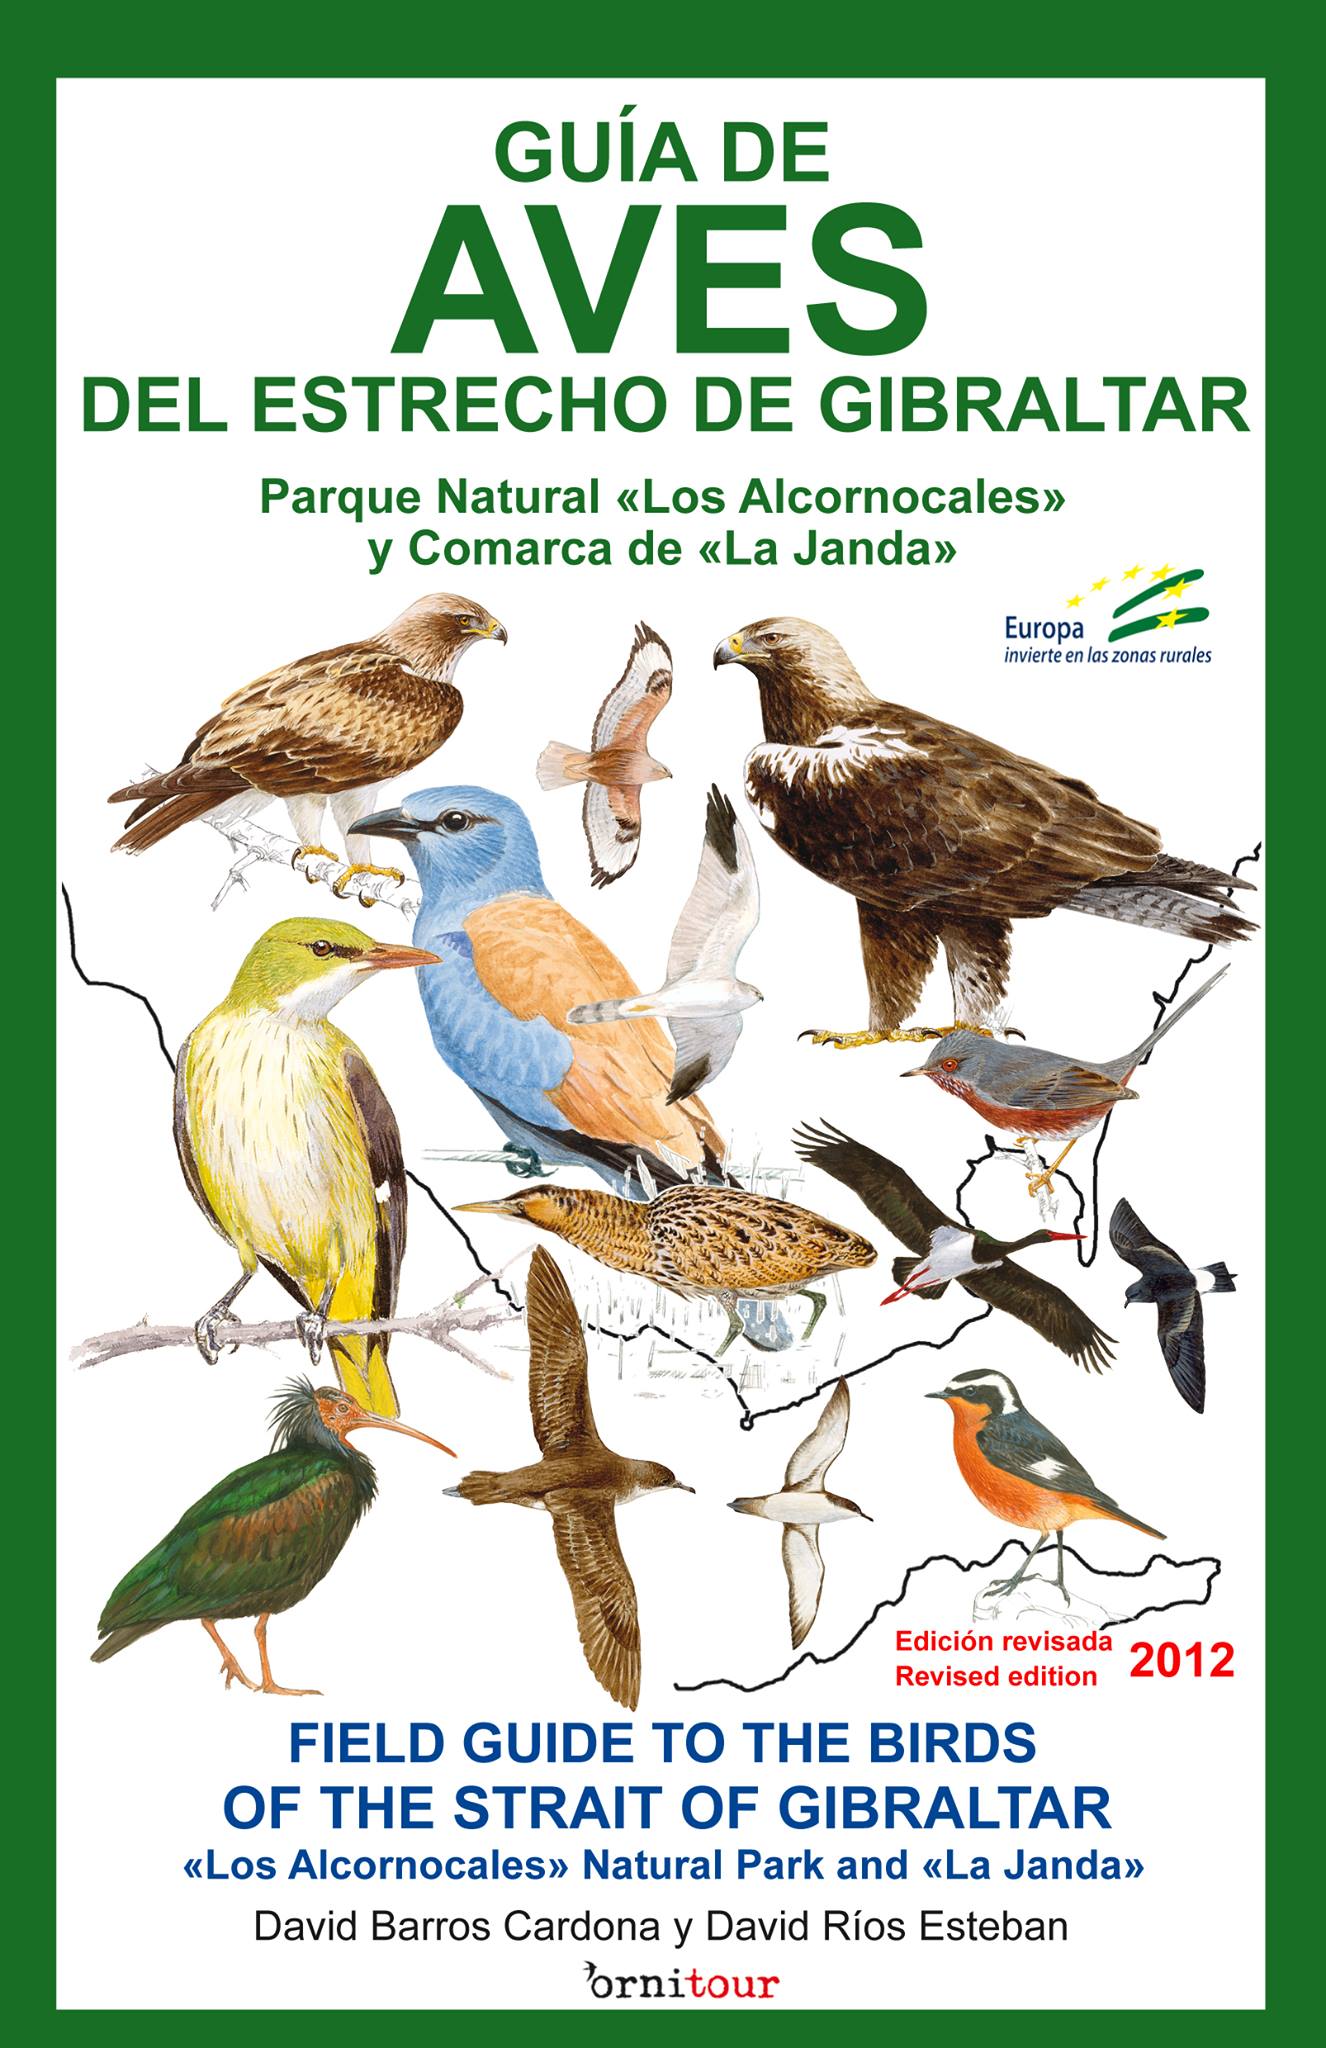 canto novela sufrimiento Publicada guía de aves - Sociedad Gaditana de Historia Natural